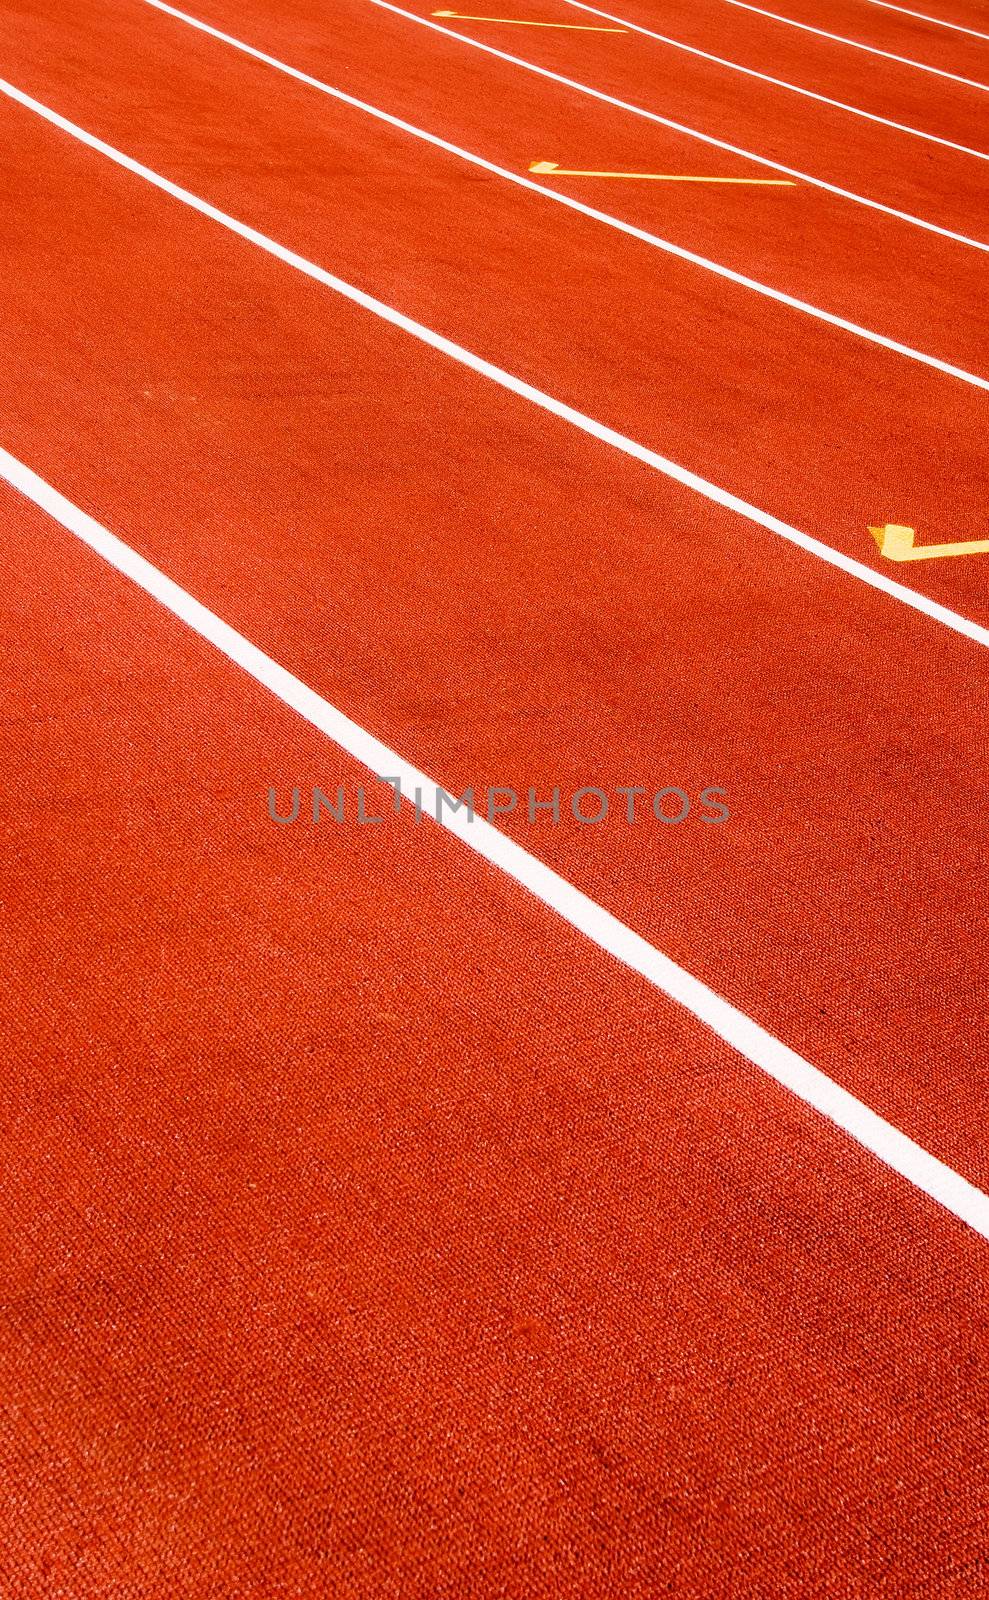 It is a red sport field for race.